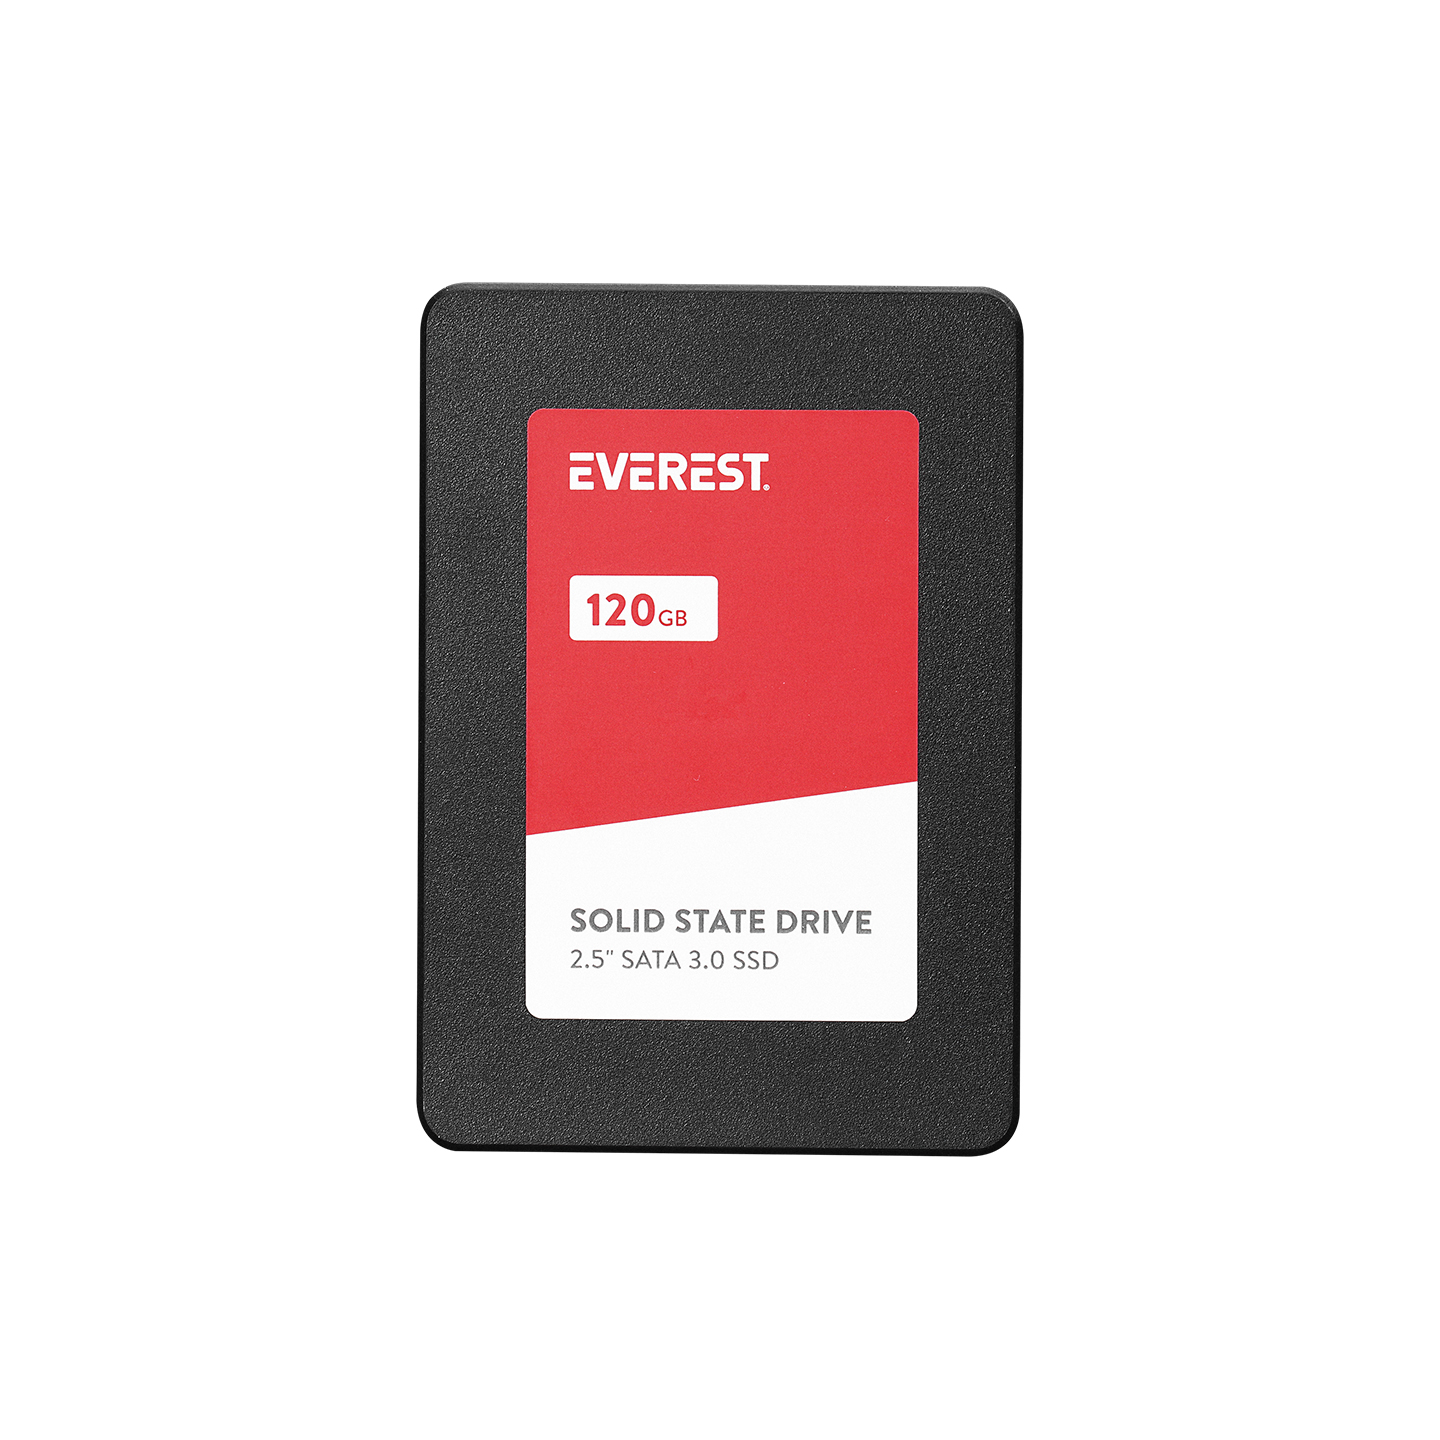 Everest ES120SH 120GB 2.5 SATA 3.0 500MB/400MB SMI+HYNIX 3D NAND Flash SSD (Solid State Drive)